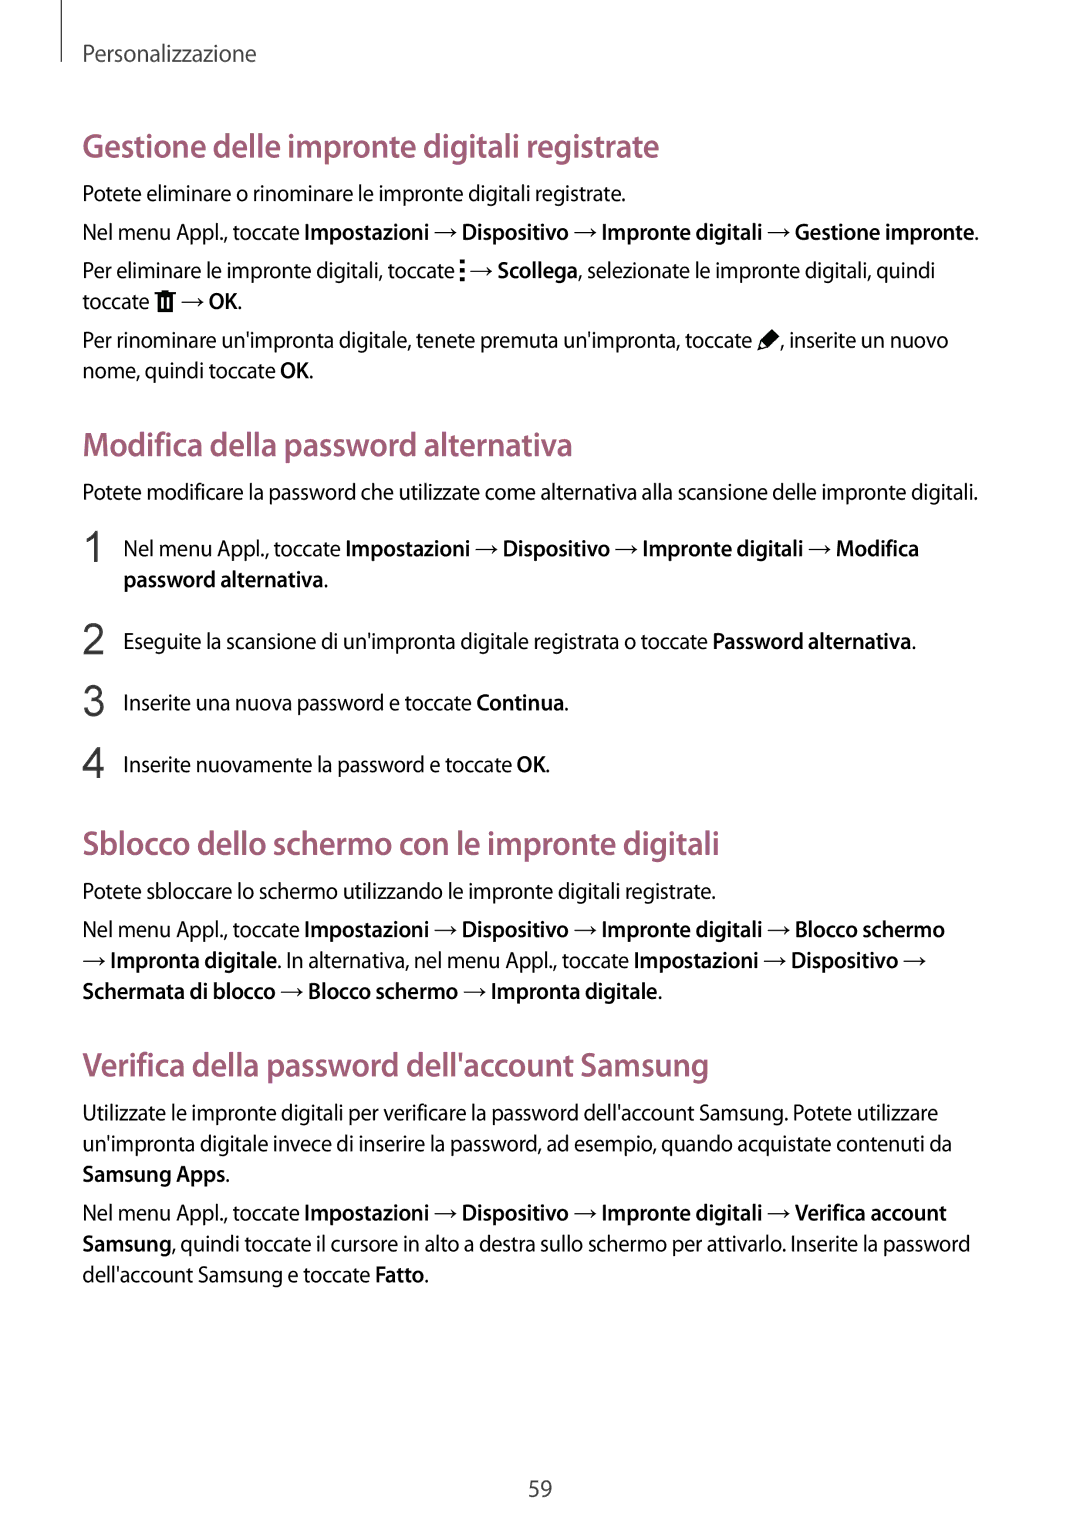 Samsung SM-T805NTSATIM, SM-T805NZWAXEO Gestione delle impronte digitali registrate, Modifica della password alternativa 